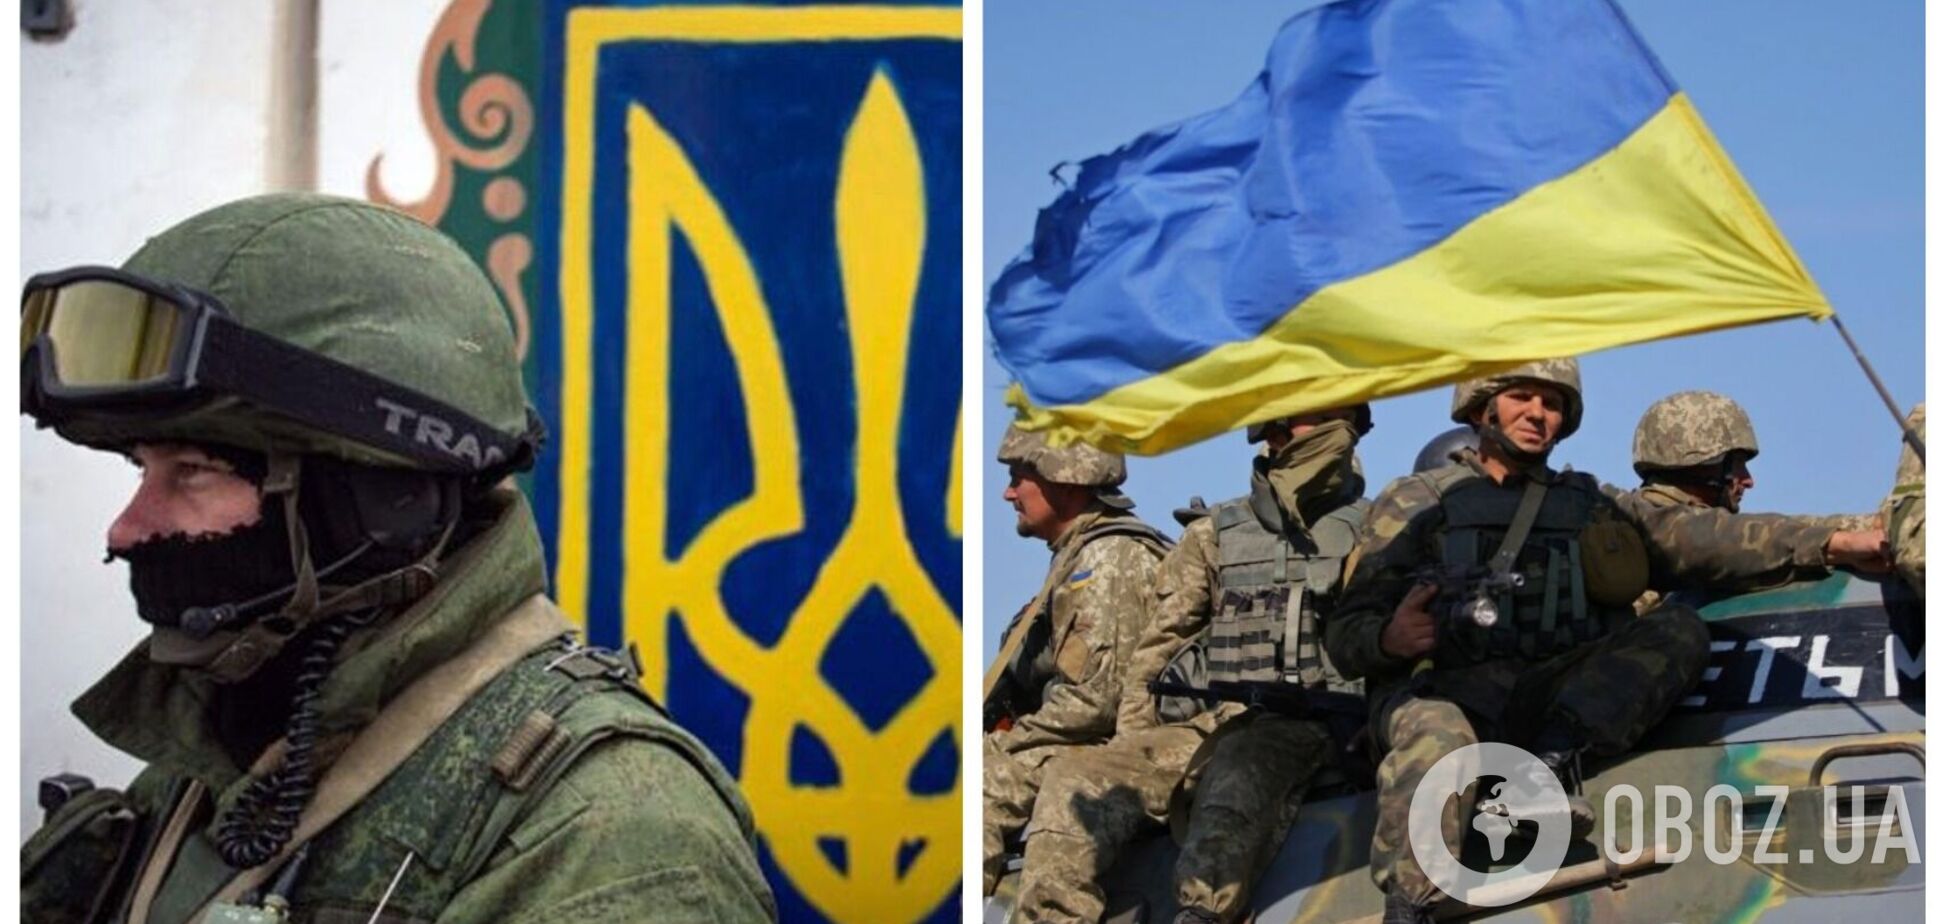 'Вместе – непобедимая сила!' В Украине отмечают День добровольца. Видео